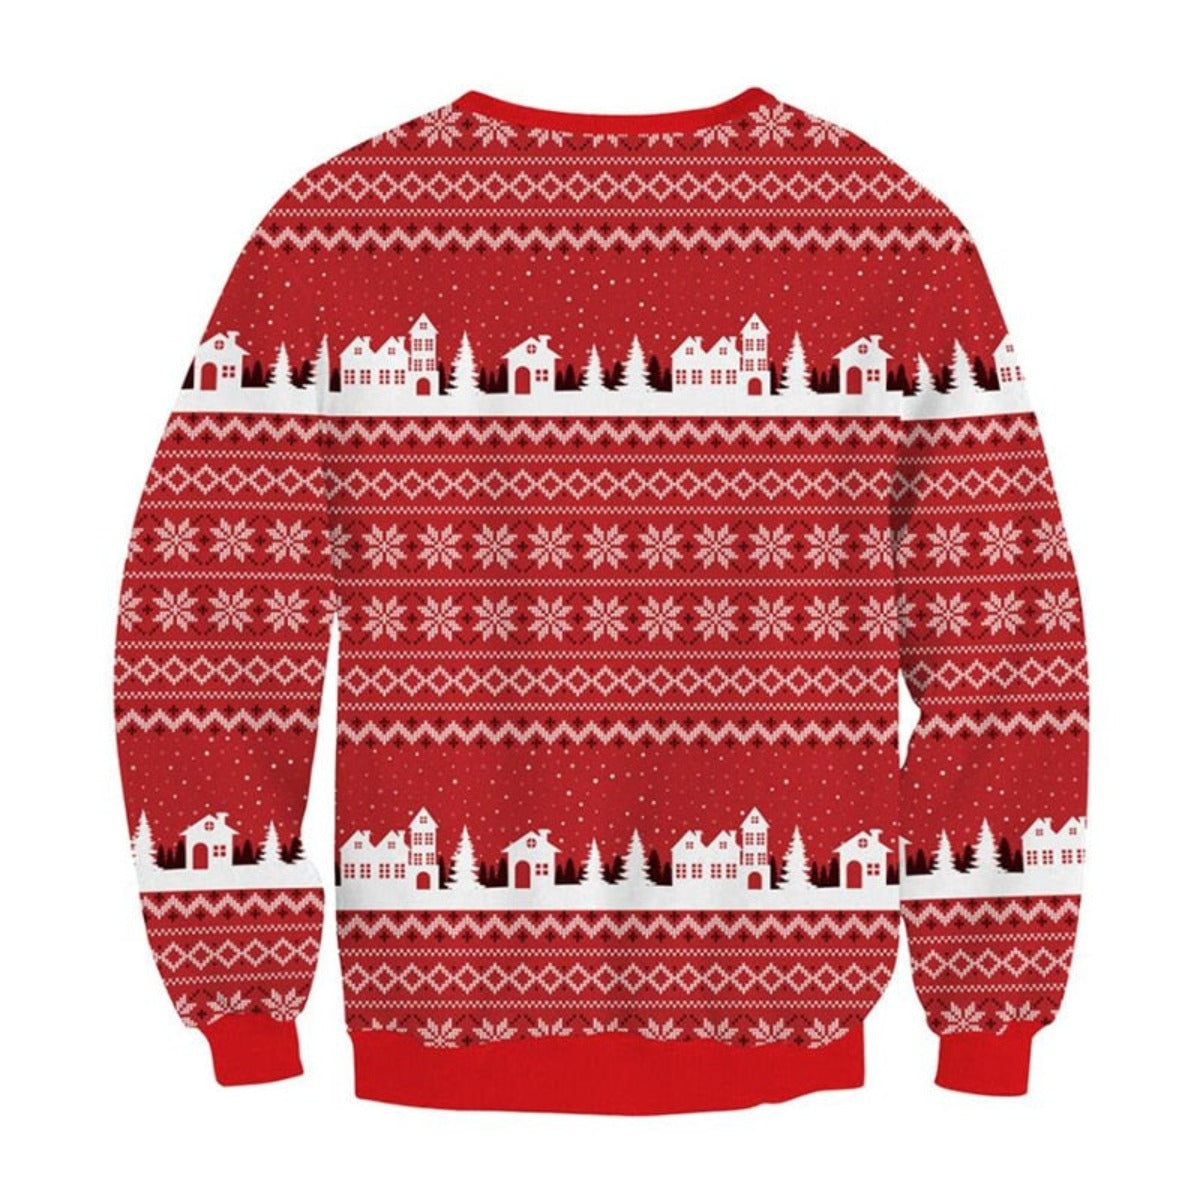 Bulldog Holiday Ugly Christmas Sweater